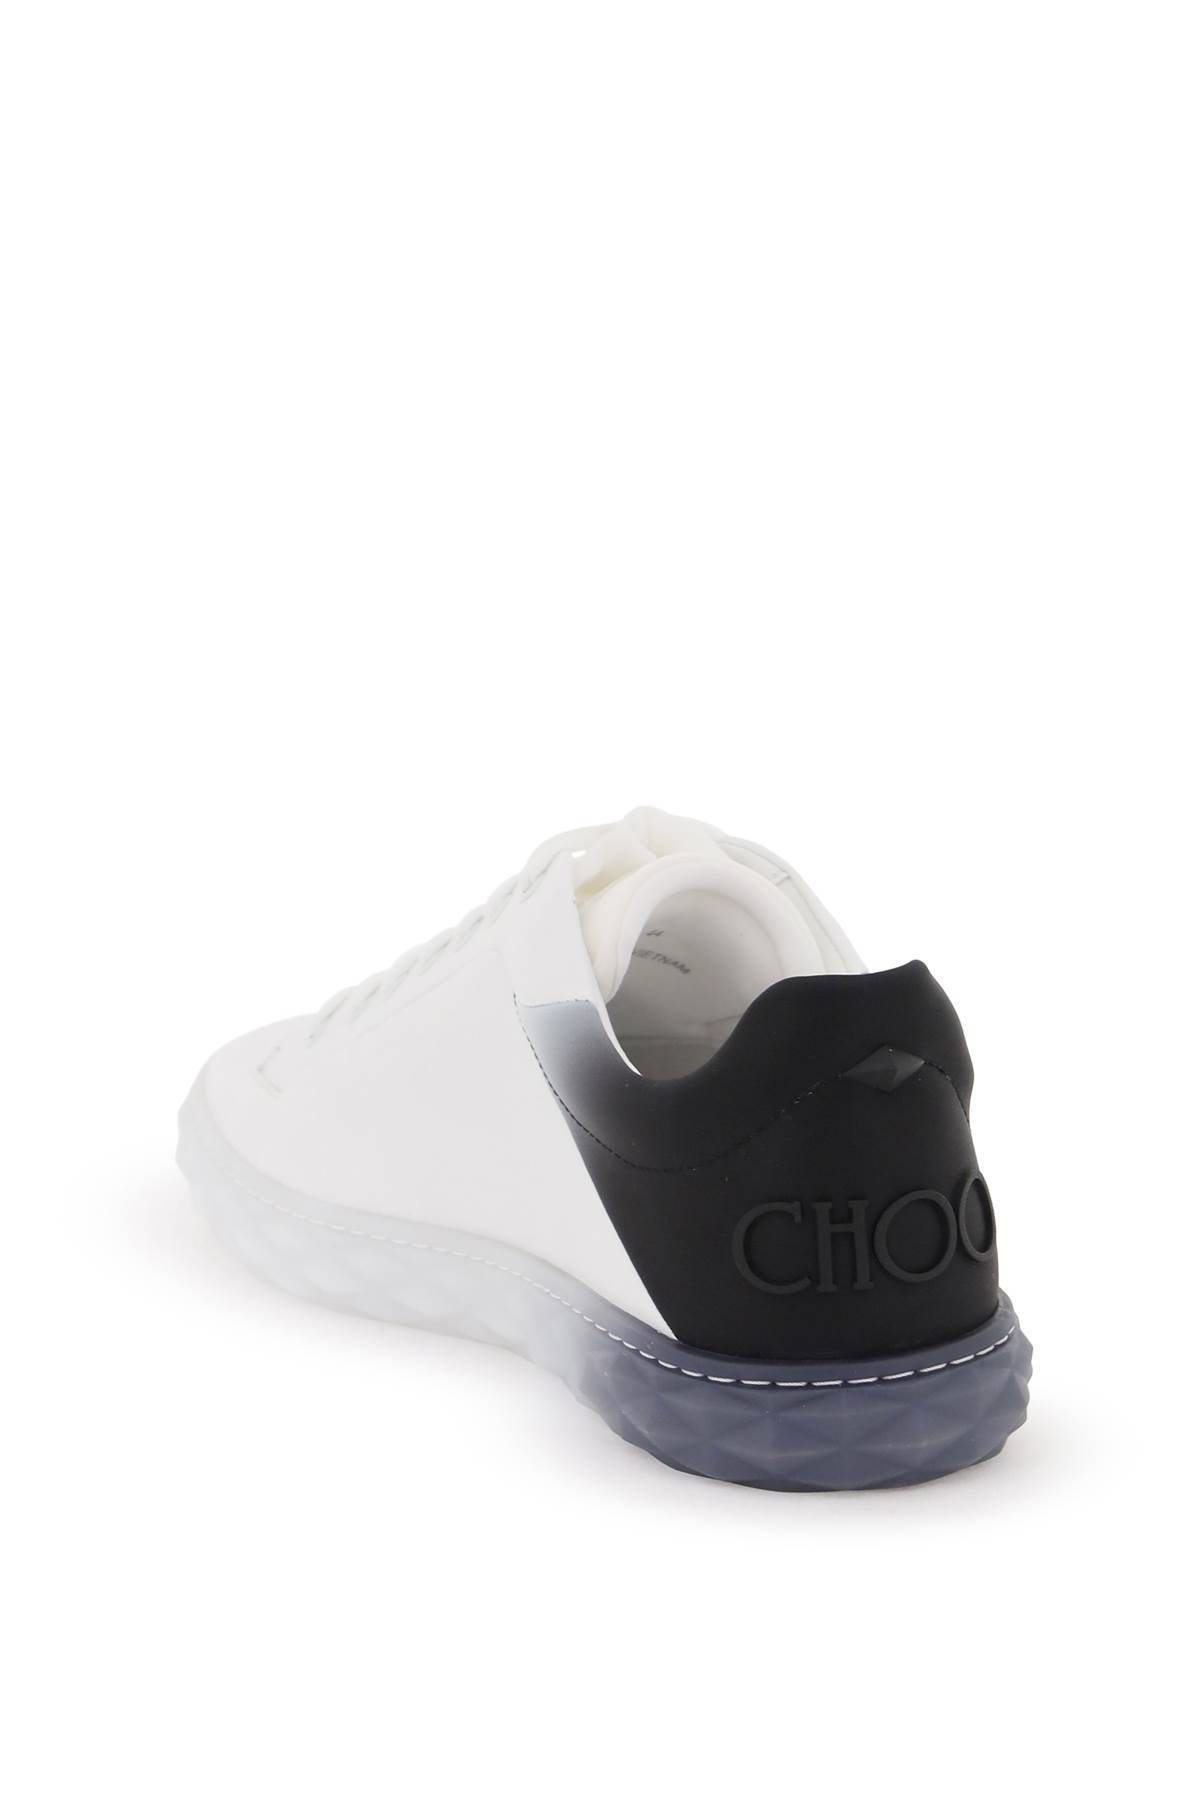 Shop Jimmy Choo Diamond Light/m Ii Sneakers In White,blue,black